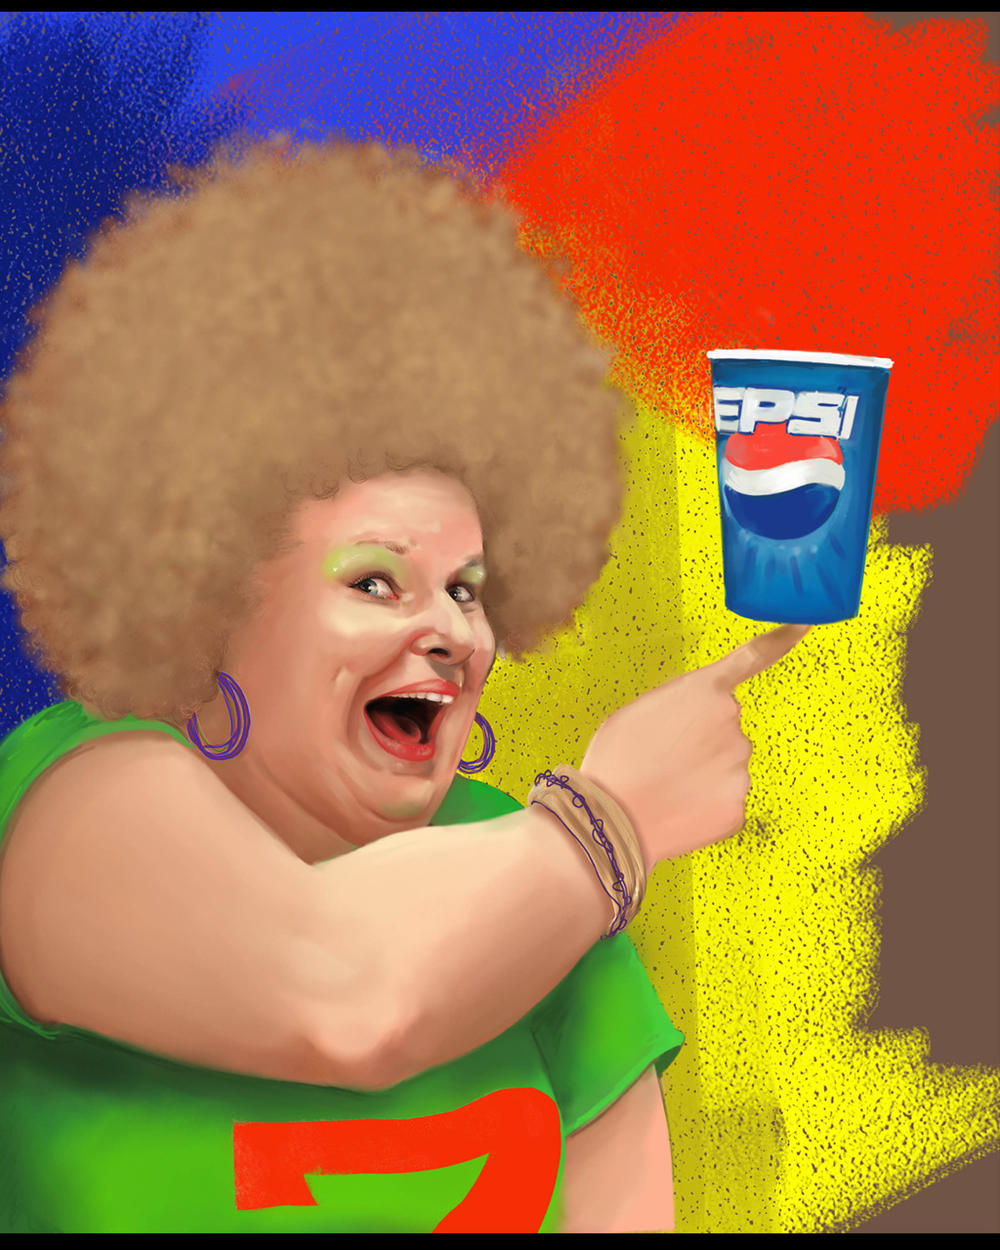 Pepsi pep's<br/><span>Projet Perso, imaginant une éventuelle campagne pour Pepsi.</span>